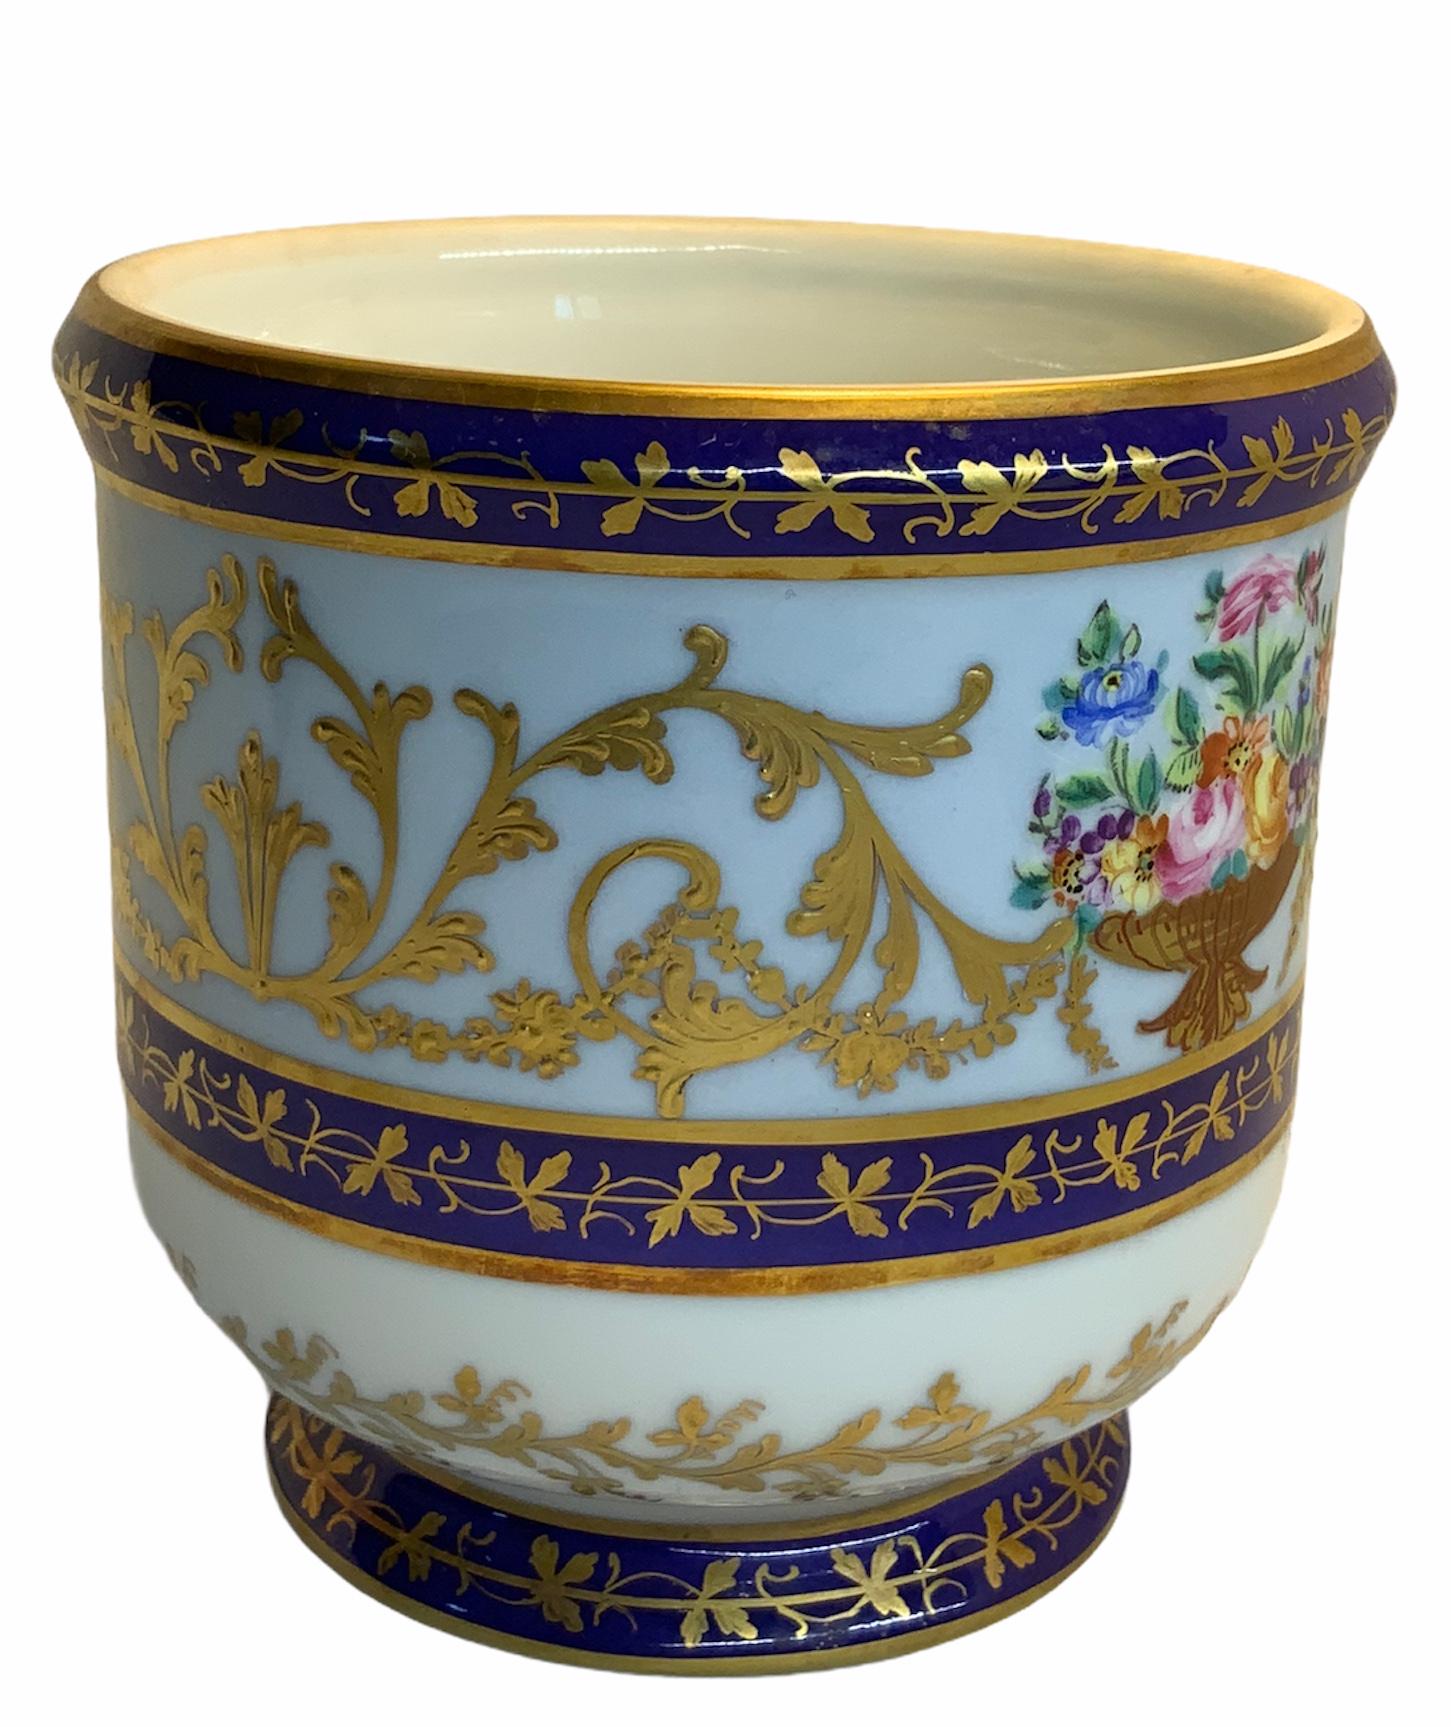 Camille Le Tallec Porcelain Petite Cachepot/Vase 1